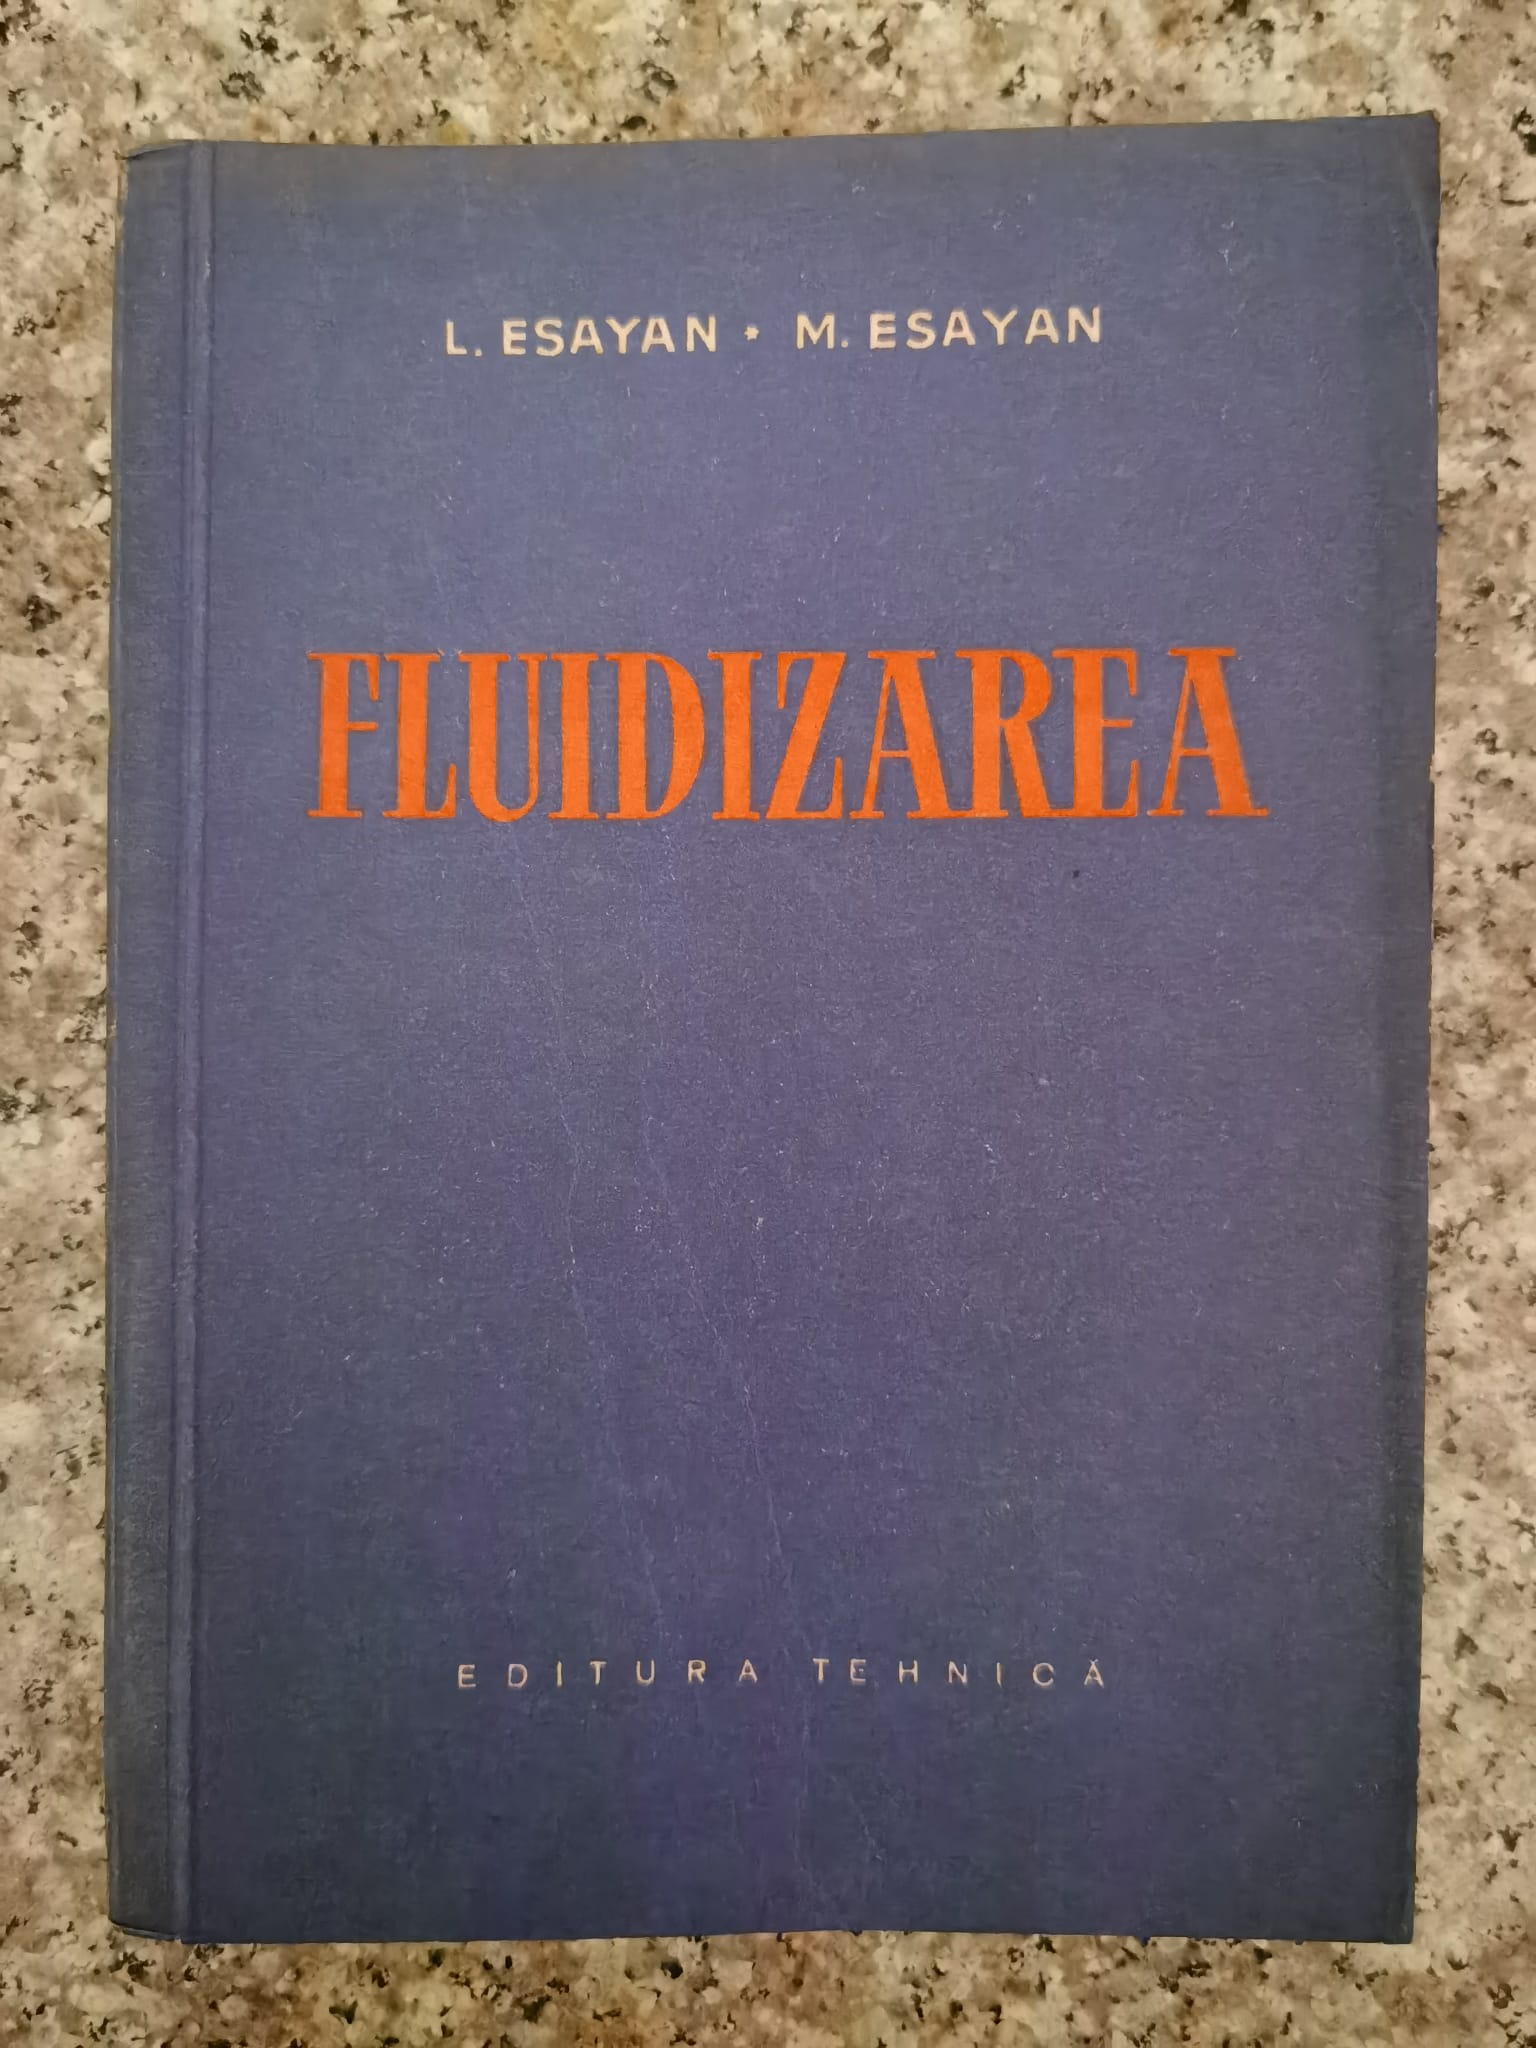 fluidizarea                                                                                          l. esayan, m. esayan                                                                                